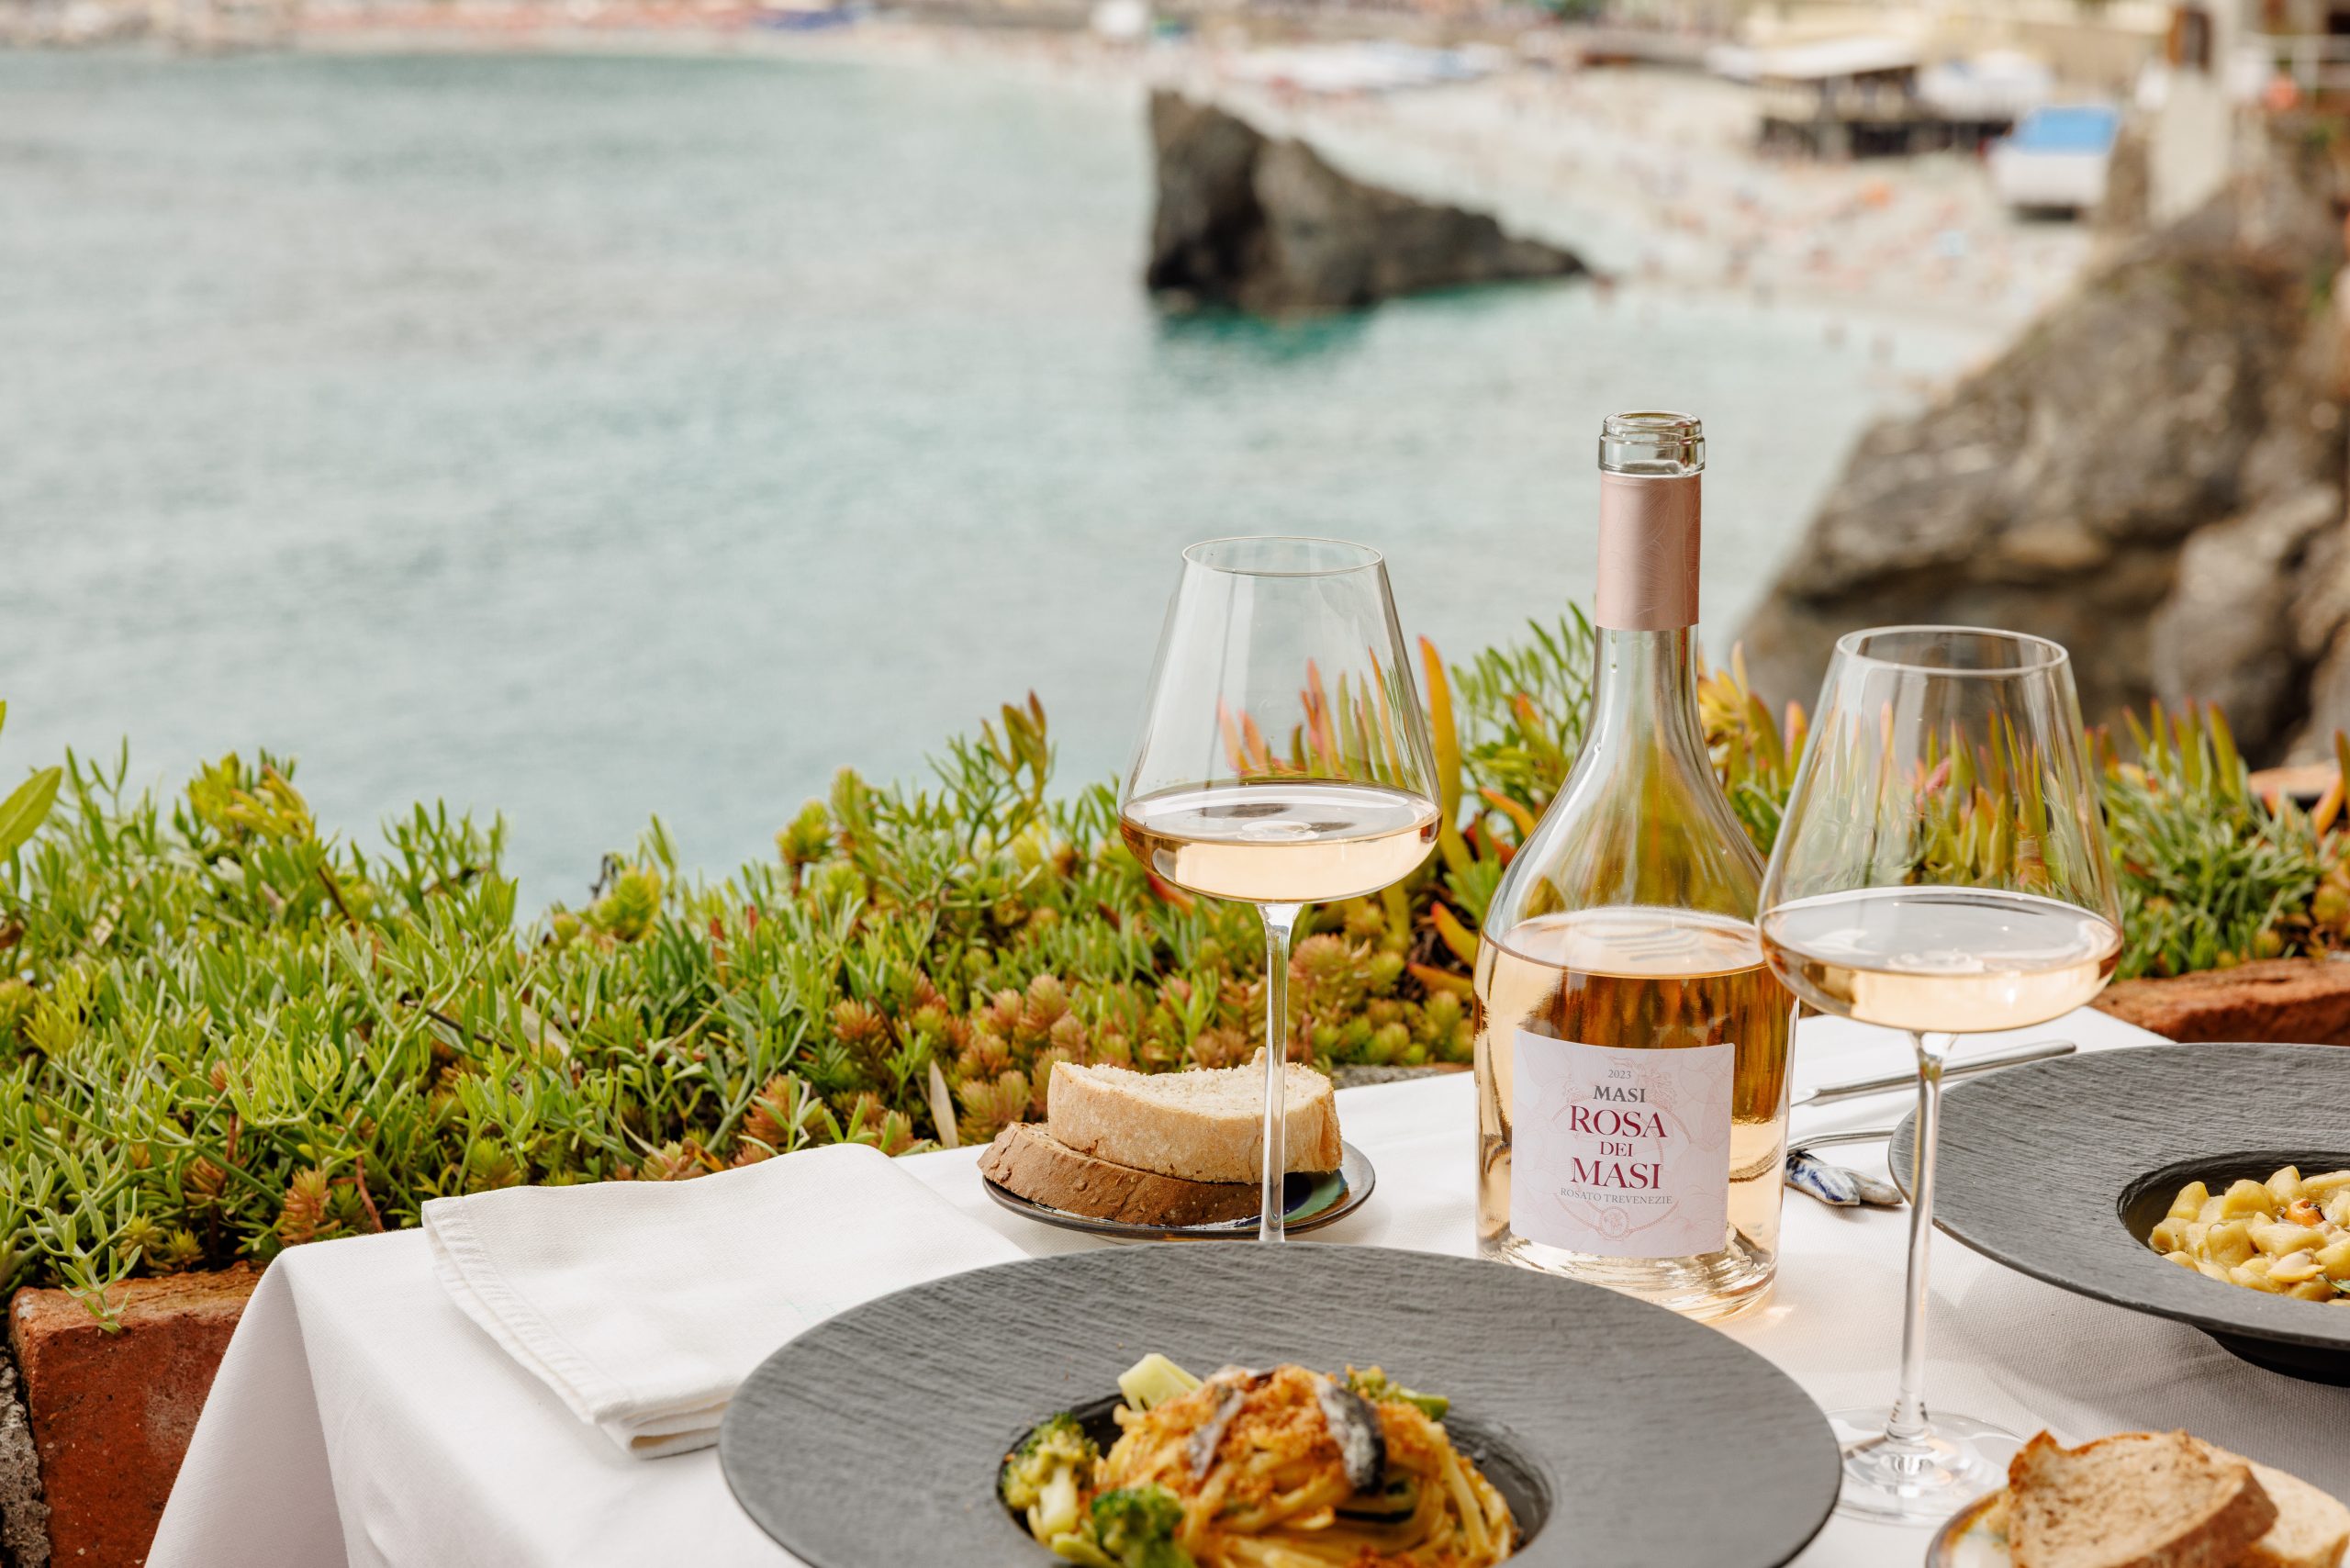 Un tavolo è apparecchiato per un pasto con vista su una baia. Su di essa si trovano una bottiglia di Rosa dei Masi, due bicchieri di vino, pane, un piatto di pasta e tovaglioli.